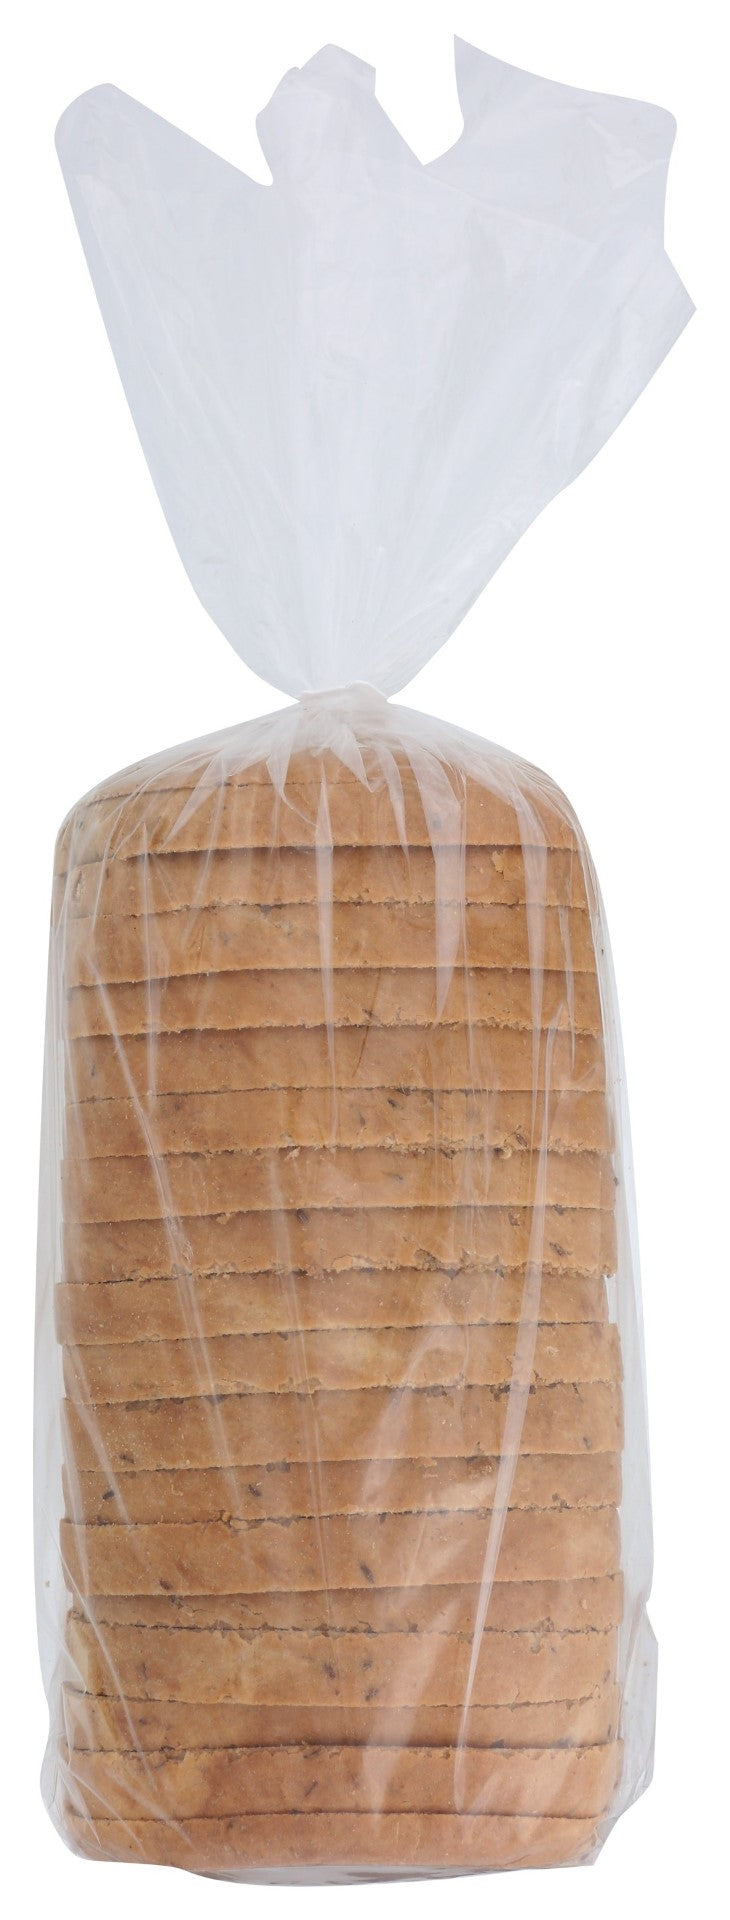 8" Sliced Rye Pumpernickel Marble Swirl Bread 1 Each - 8 Per Case.